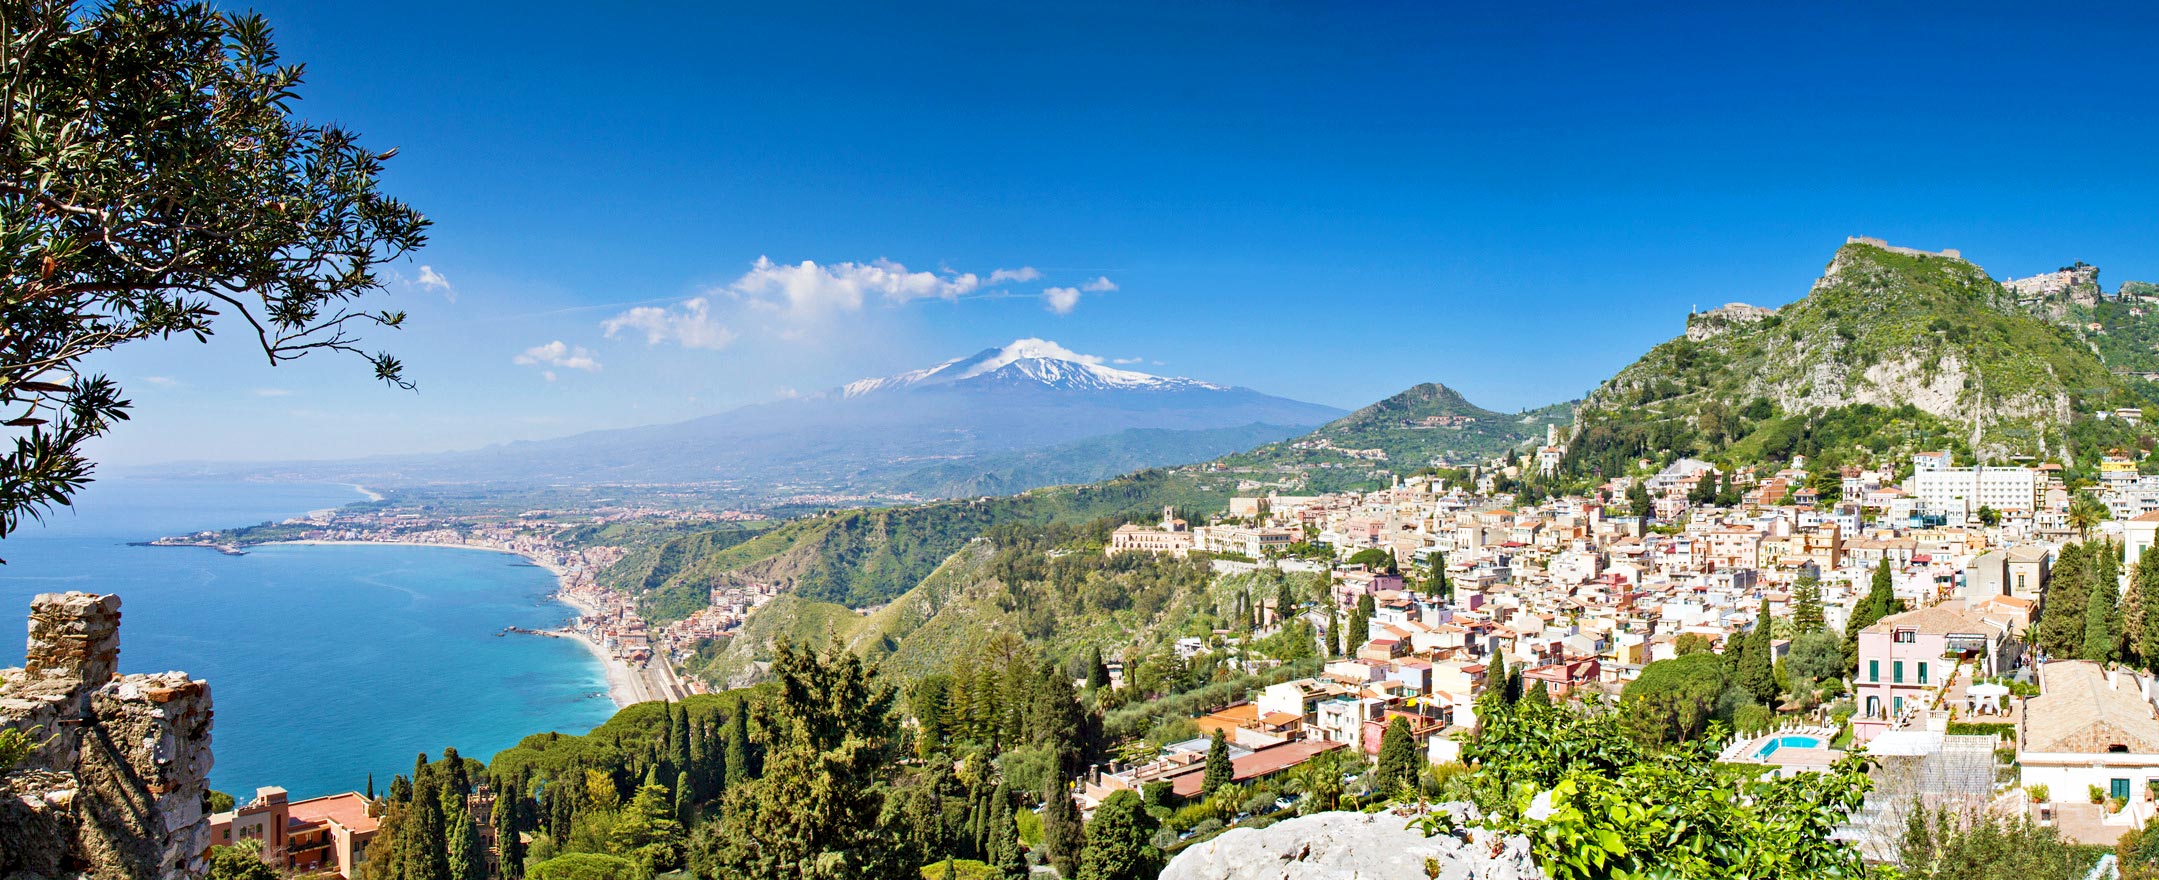 Sizilien - Taormina mit Sicht zum Etna